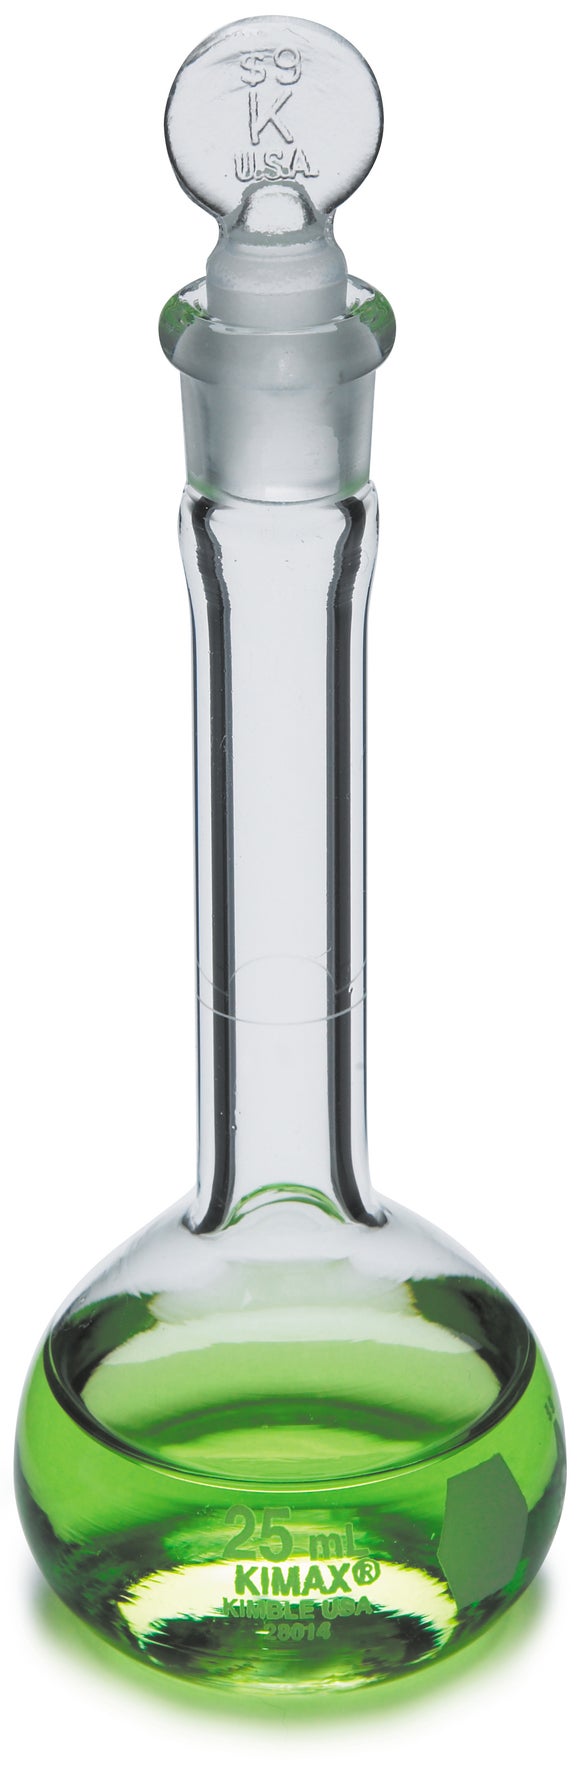 Flask, Volumetric Class A, Glass, 25 mL